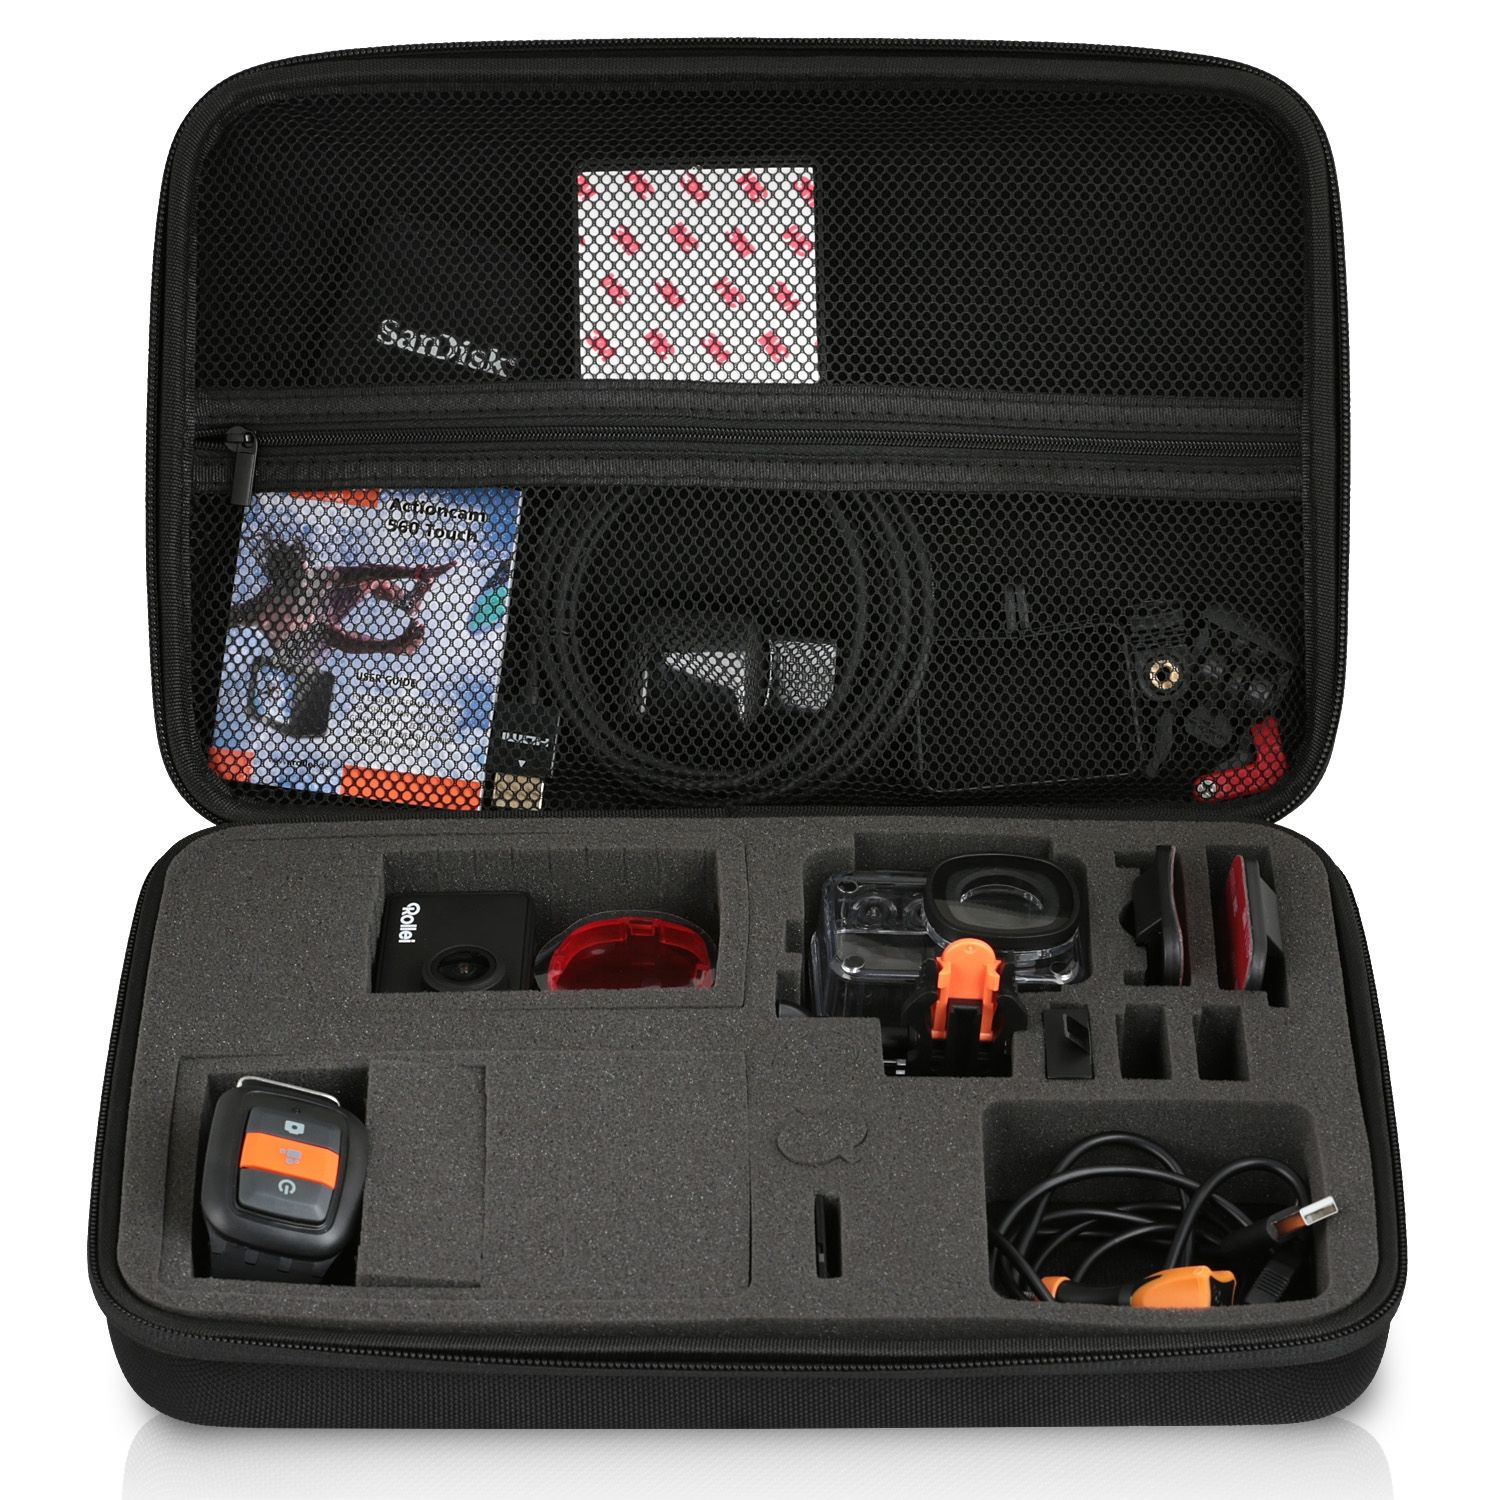 WICKED CHILI GOP Case für / 510 kompatibel schwarz 425 / Schutztasche, Rollei mit Kamera / / 530 Koffer Tasche 560 / 540 550 Actioncam